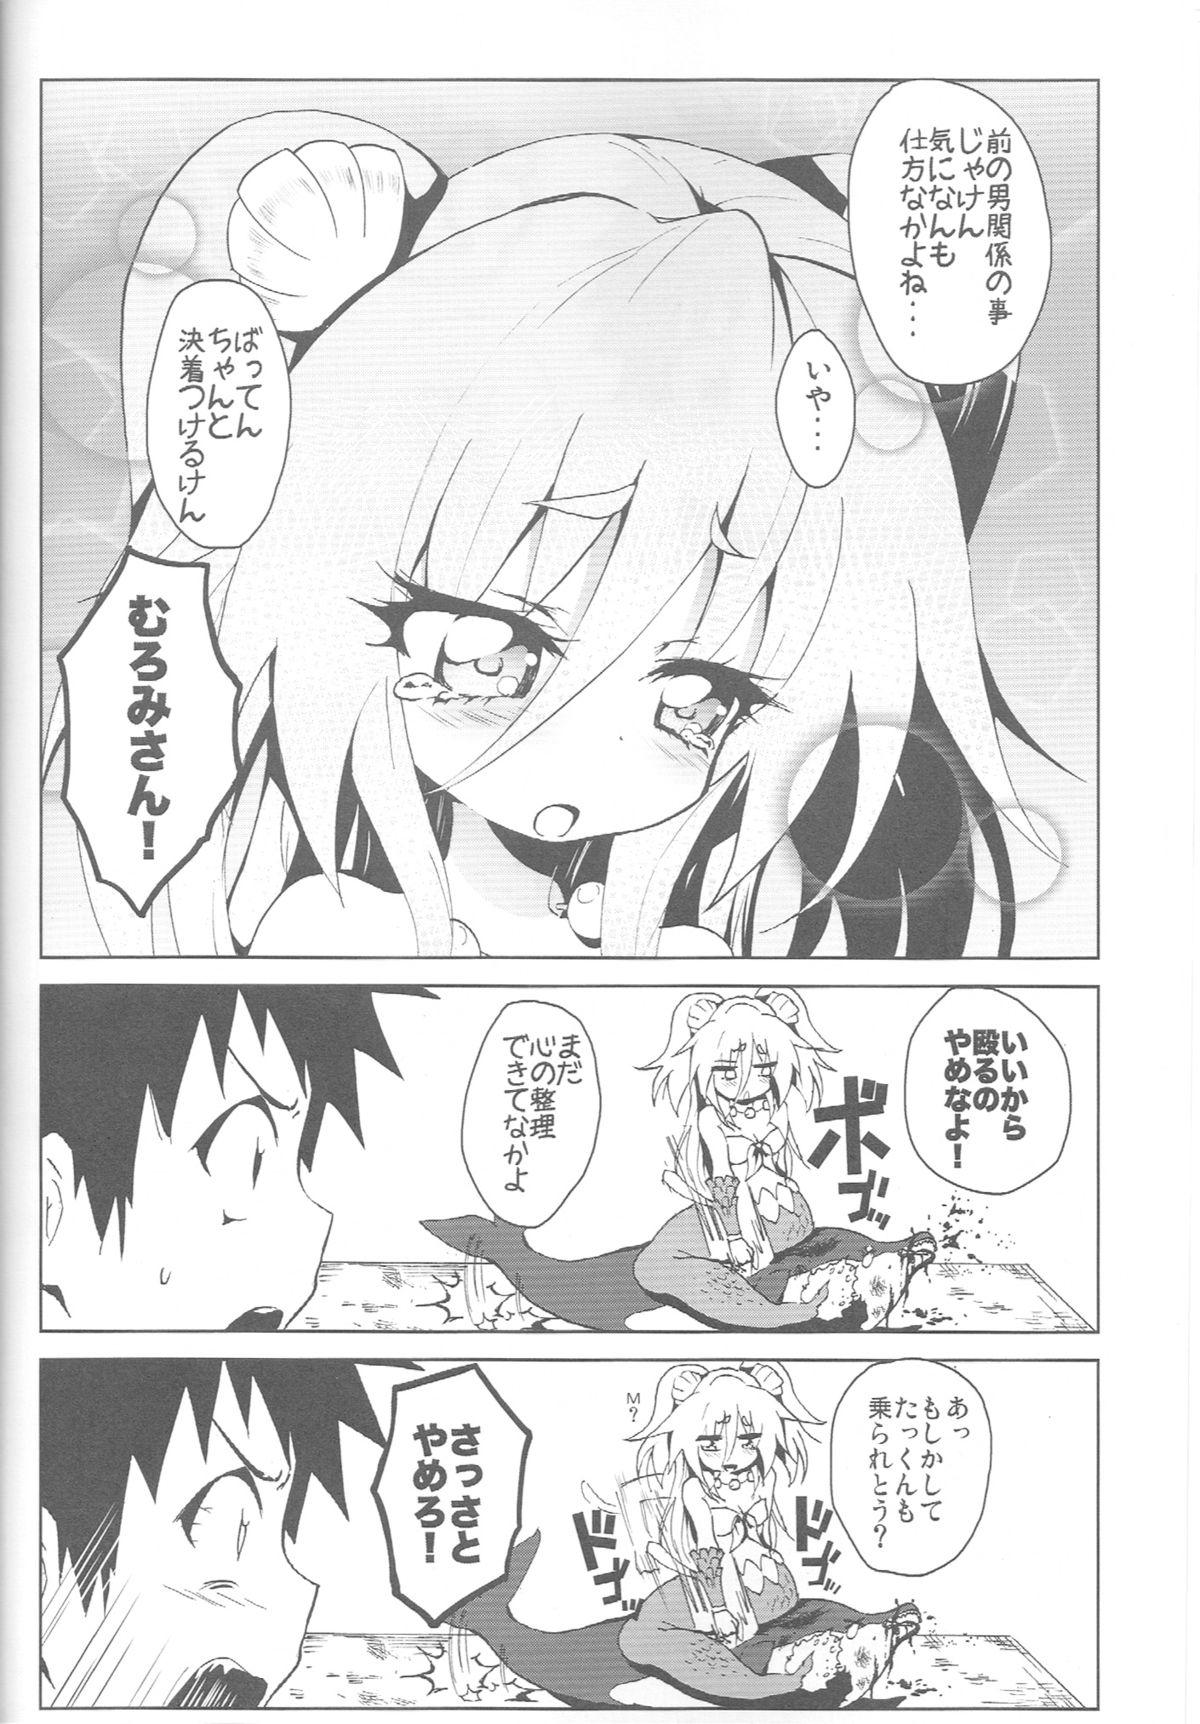 Money Talks Seashepard to Muromi-san - Namiuchigiwa no muromi-san Edging - Page 3